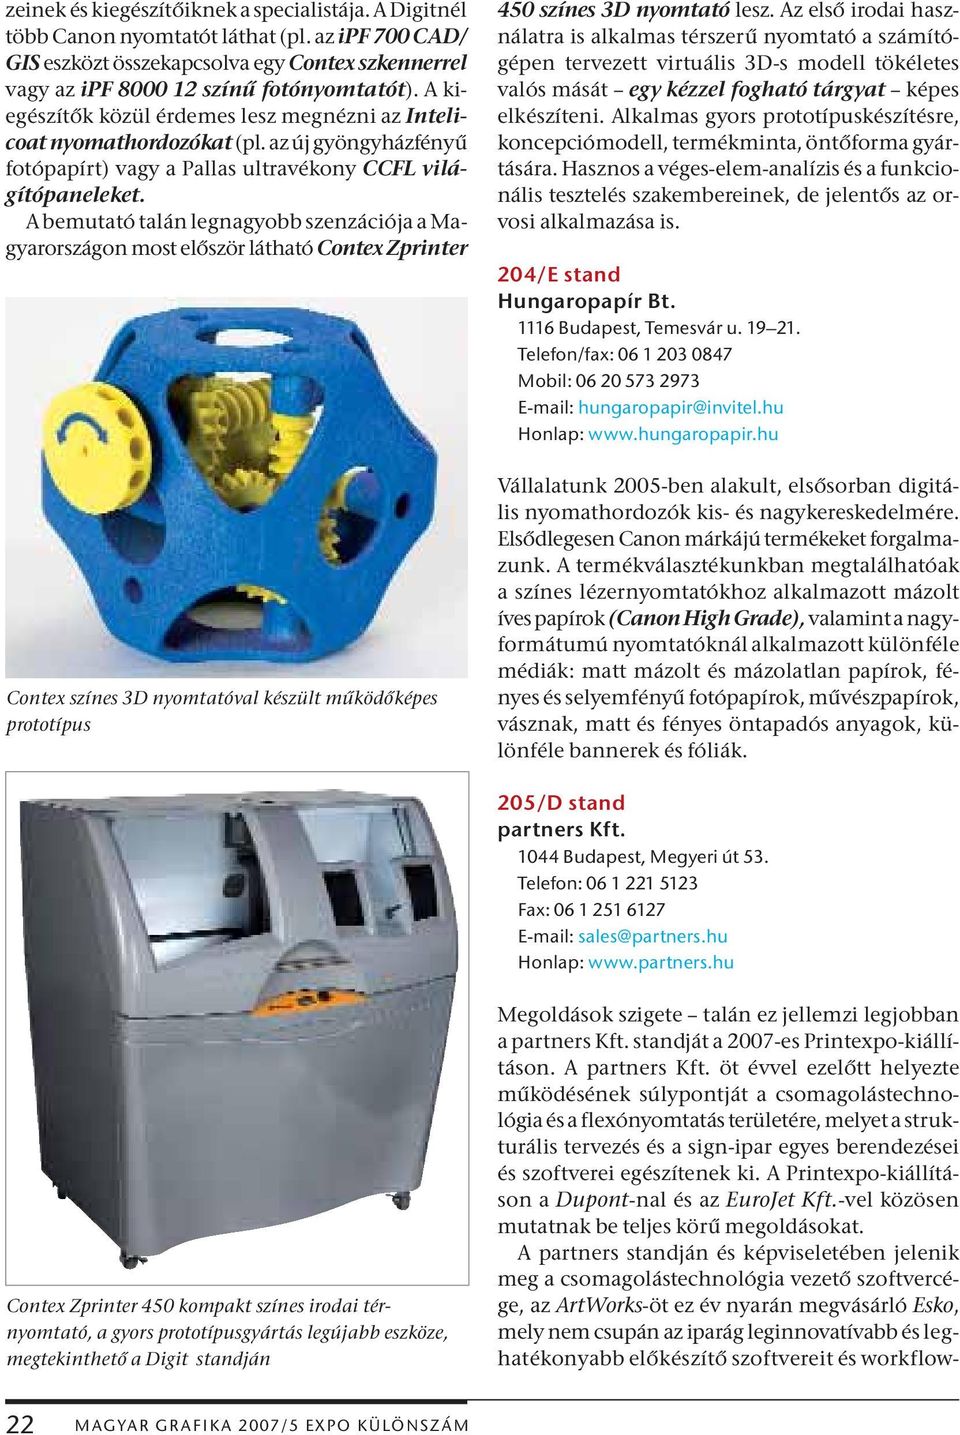 A bemutató talán legnagyobb szenzációja a Magyarországon most először látható Contex Zprinter Contex színes 3D nyomtatóval készült működőképes prototípus 450 színes 3D nyomtató lesz.